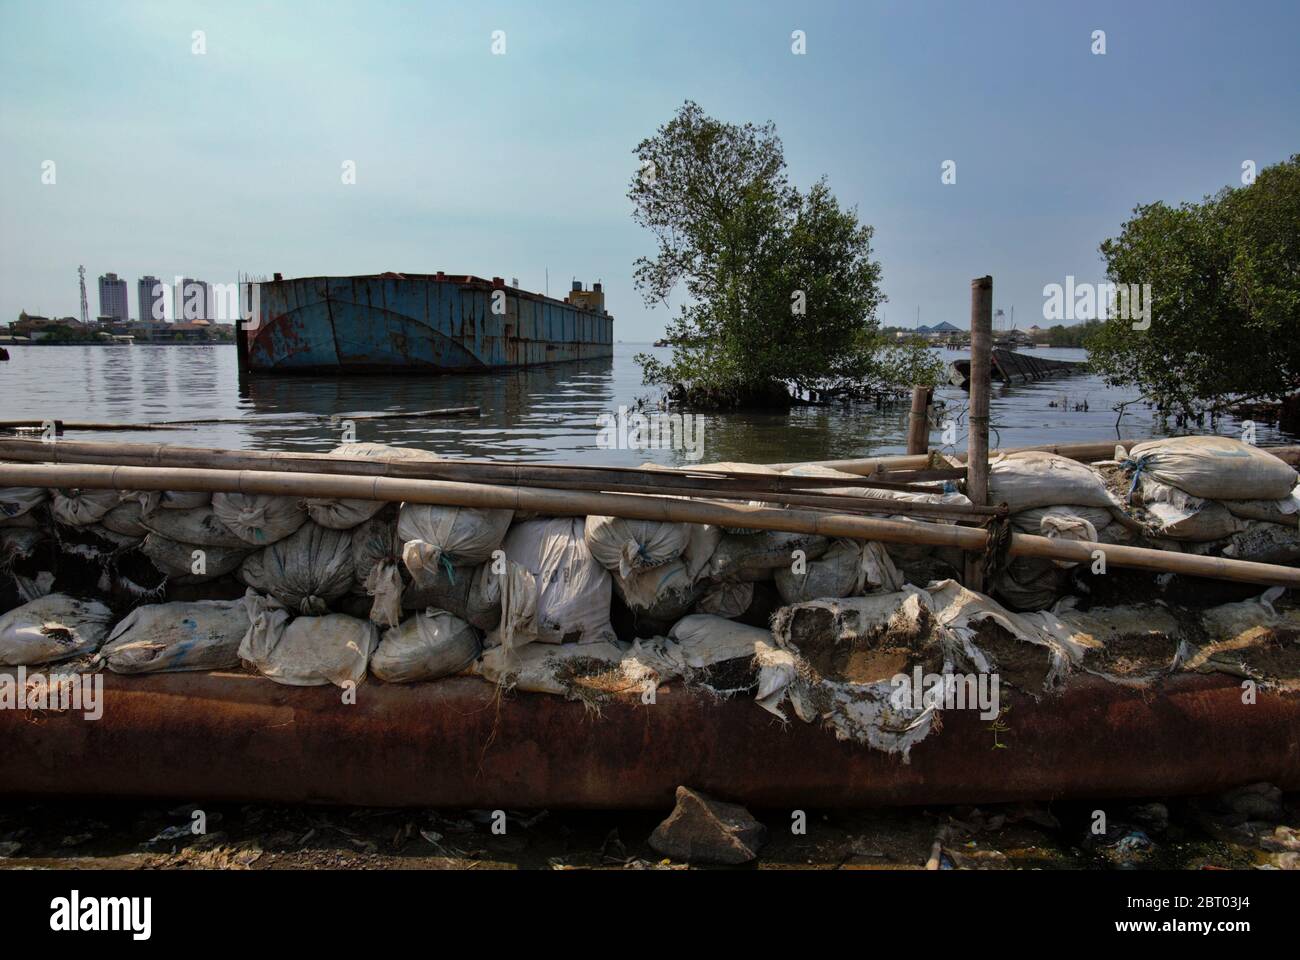 Una chiatta offshore che galleggia vicino ad una struttura di difesa costiera nel villaggio di Muara Baru, a Nord di Giacarta, Giacarta, Indonesia. Foto di archivio. Foto Stock